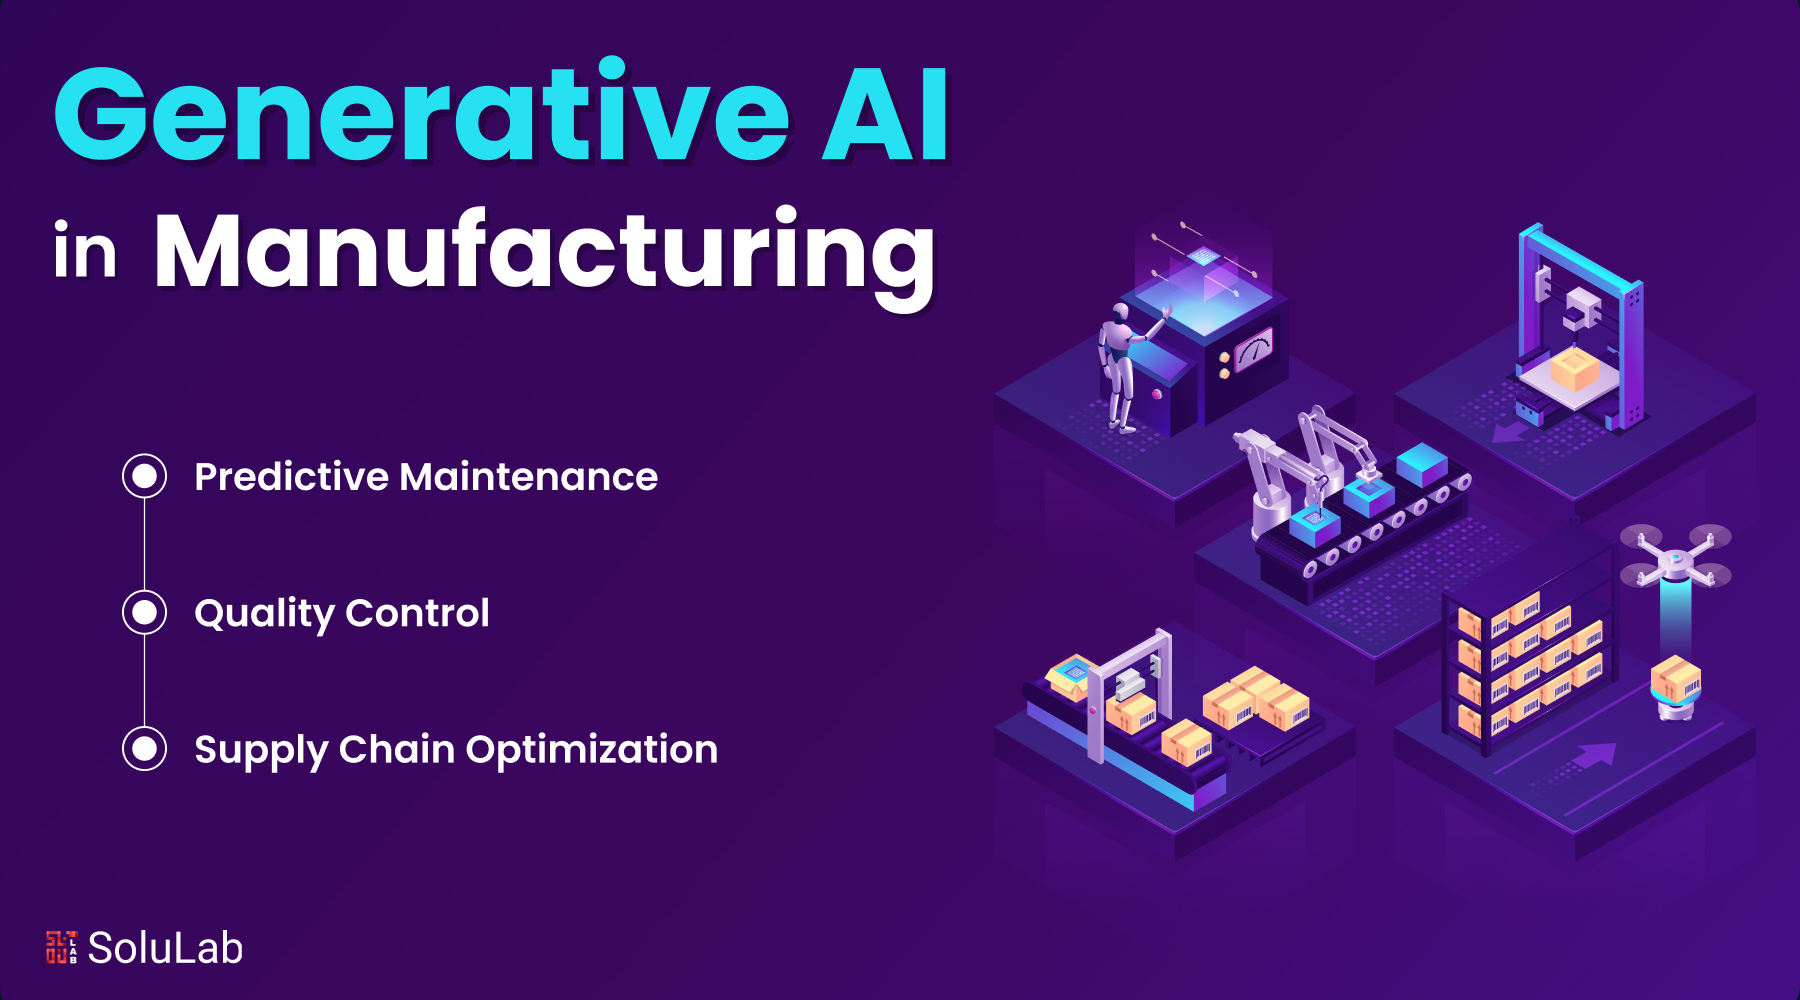 Generative AI in the Manufacturing